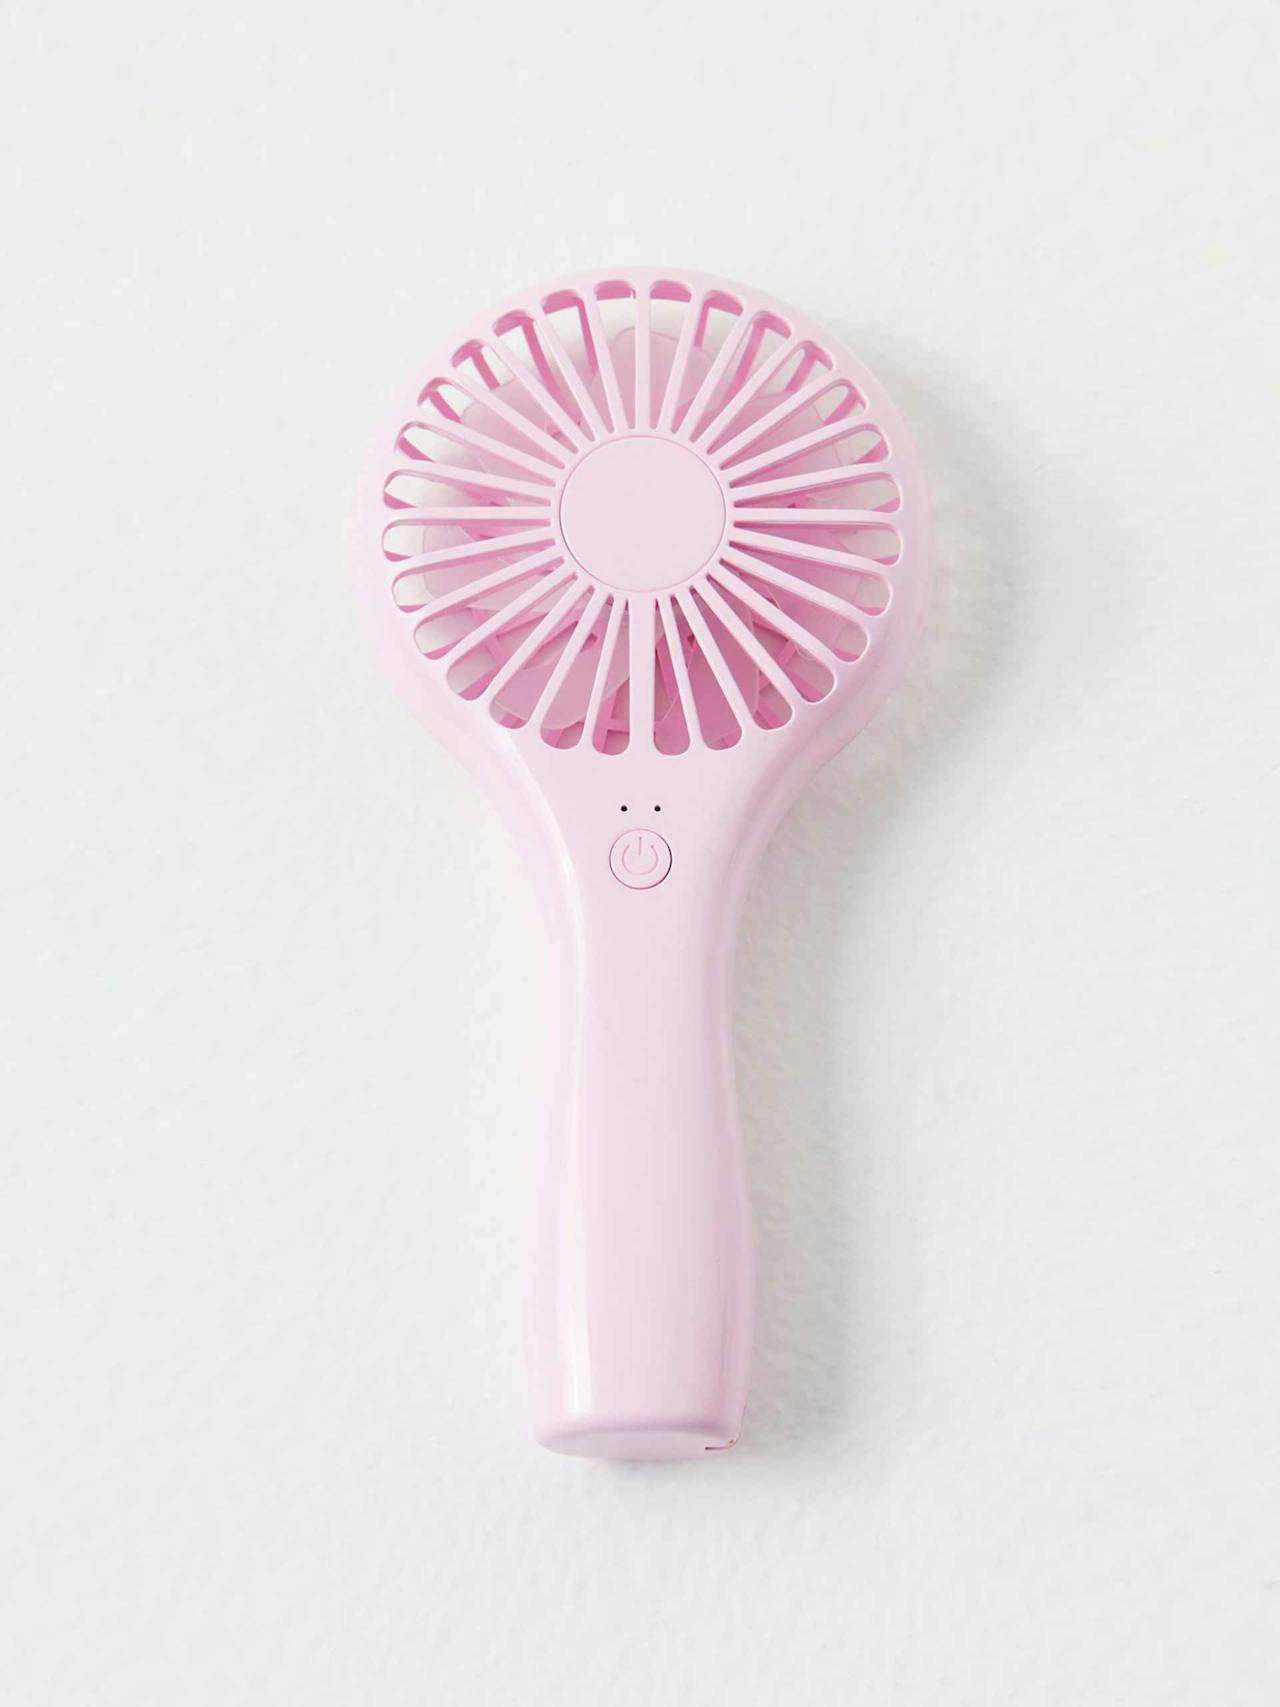 Light pink handheld fan